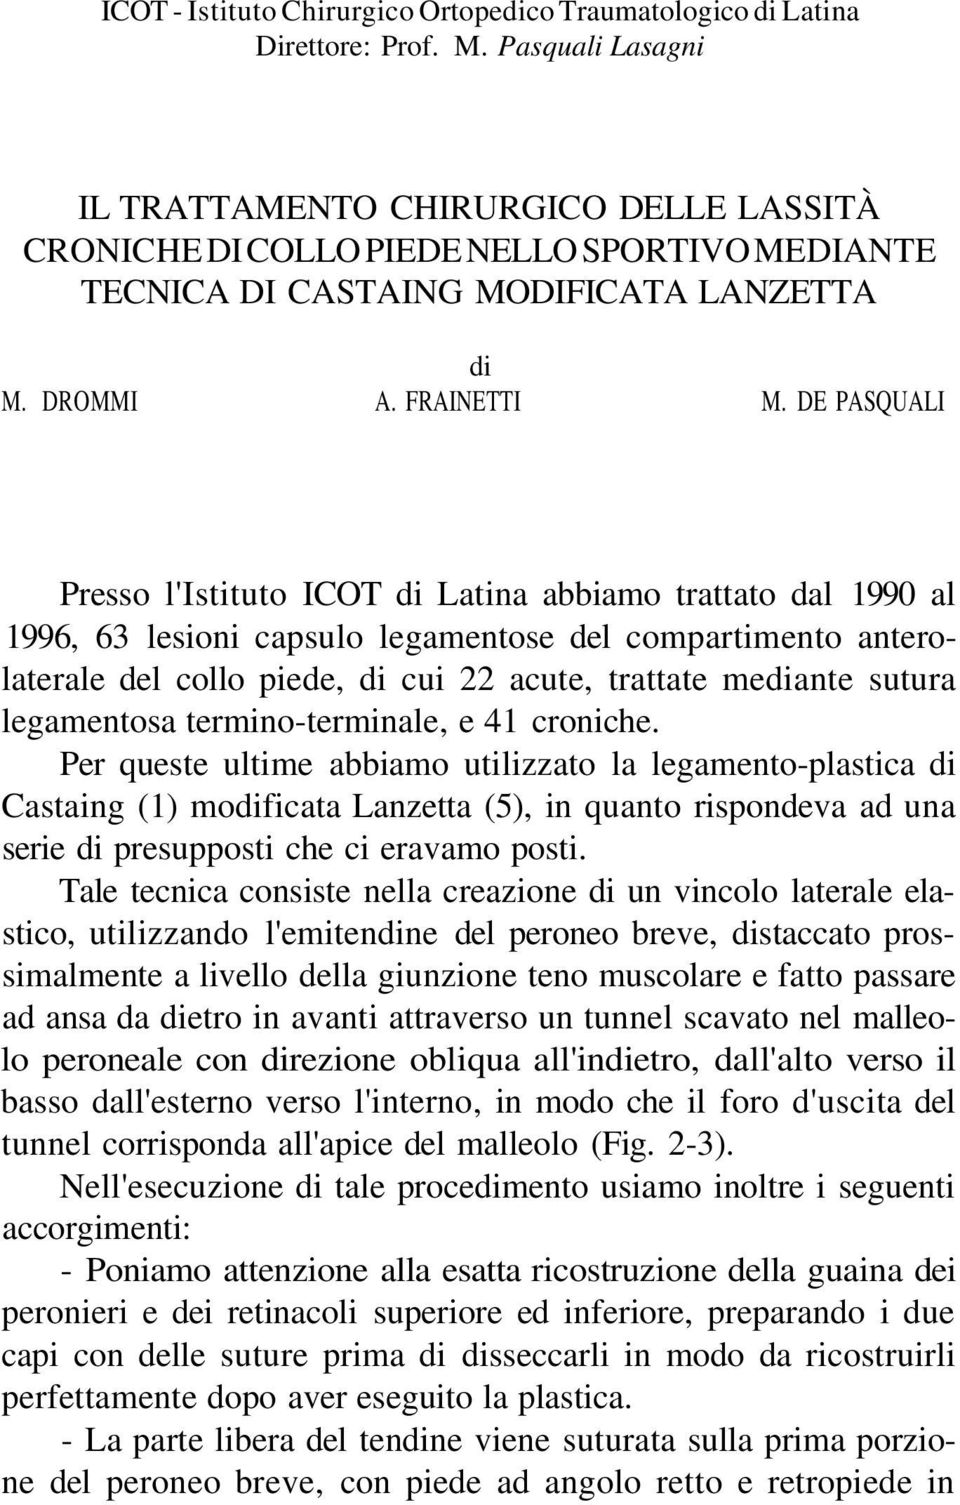 DE PASQUALI Presso l'istituto ICOT di Latina abbiamo trattato dal 1990 al 1996, 63 lesioni capsulo legamentose del compartimento anterolaterale del collo piede, di cui 22 acute, trattate mediante